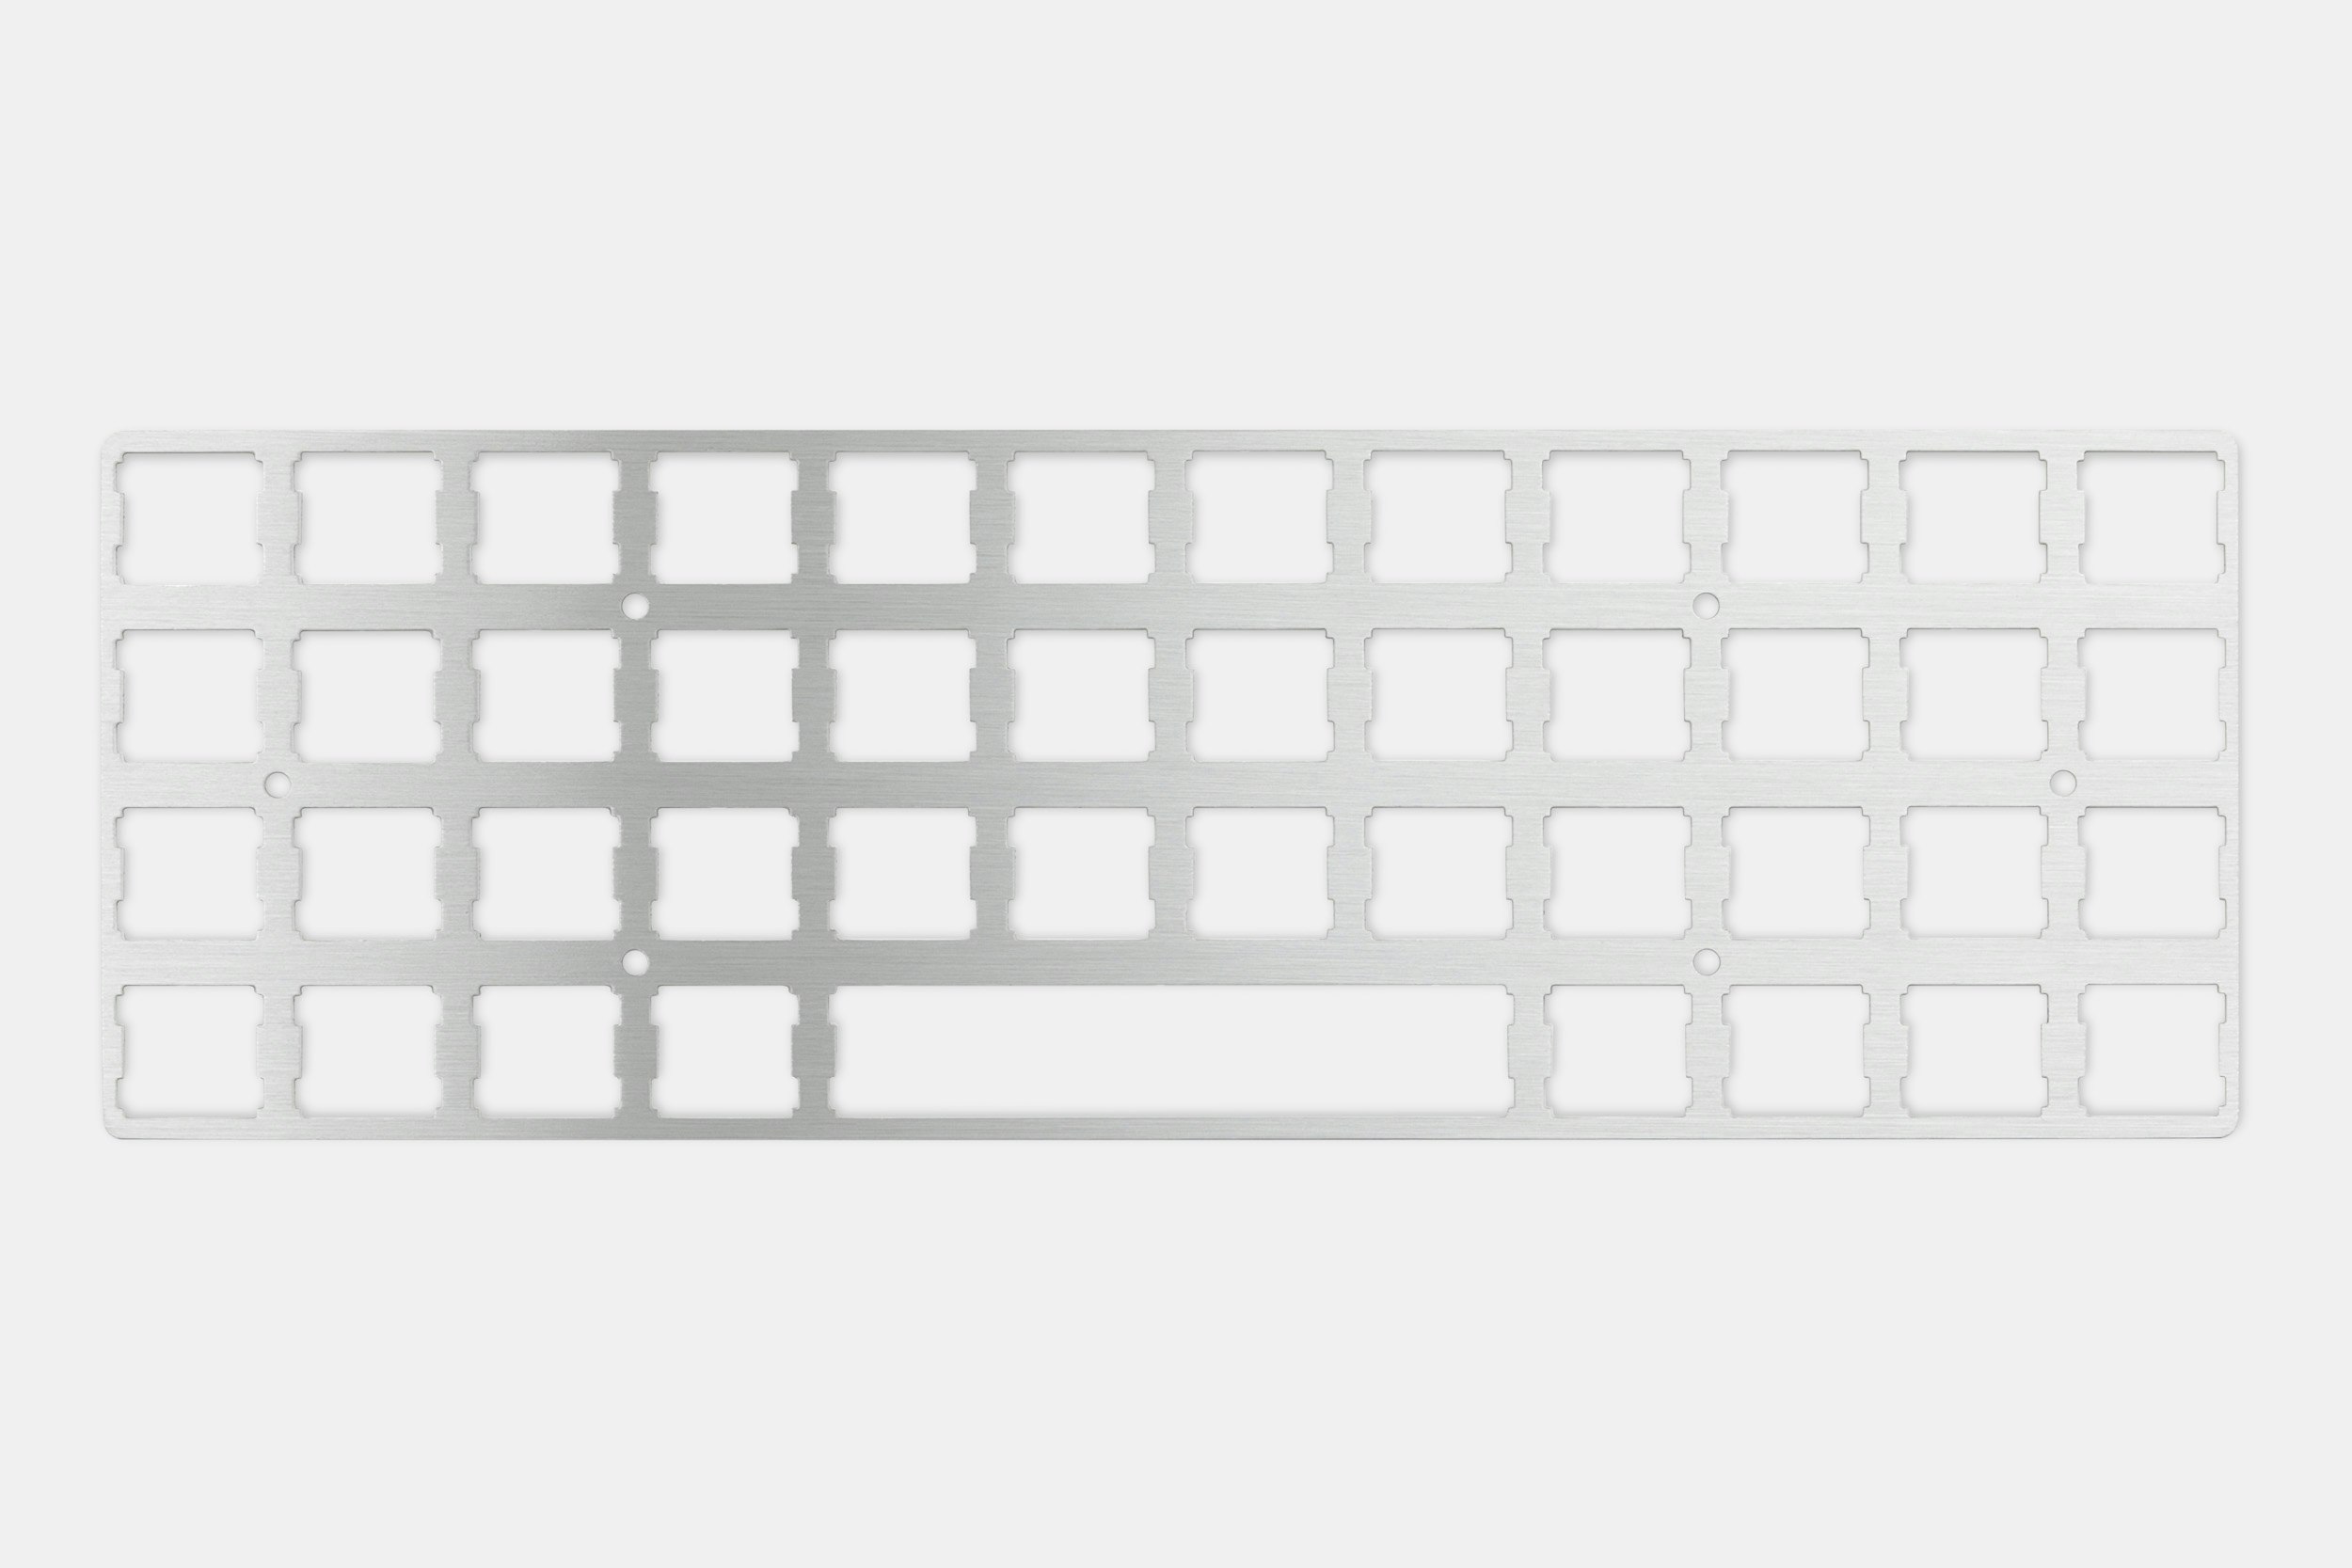 Drop + OLKB Planck Mechanical Keyboard Kit V7 Details | Mechanical 